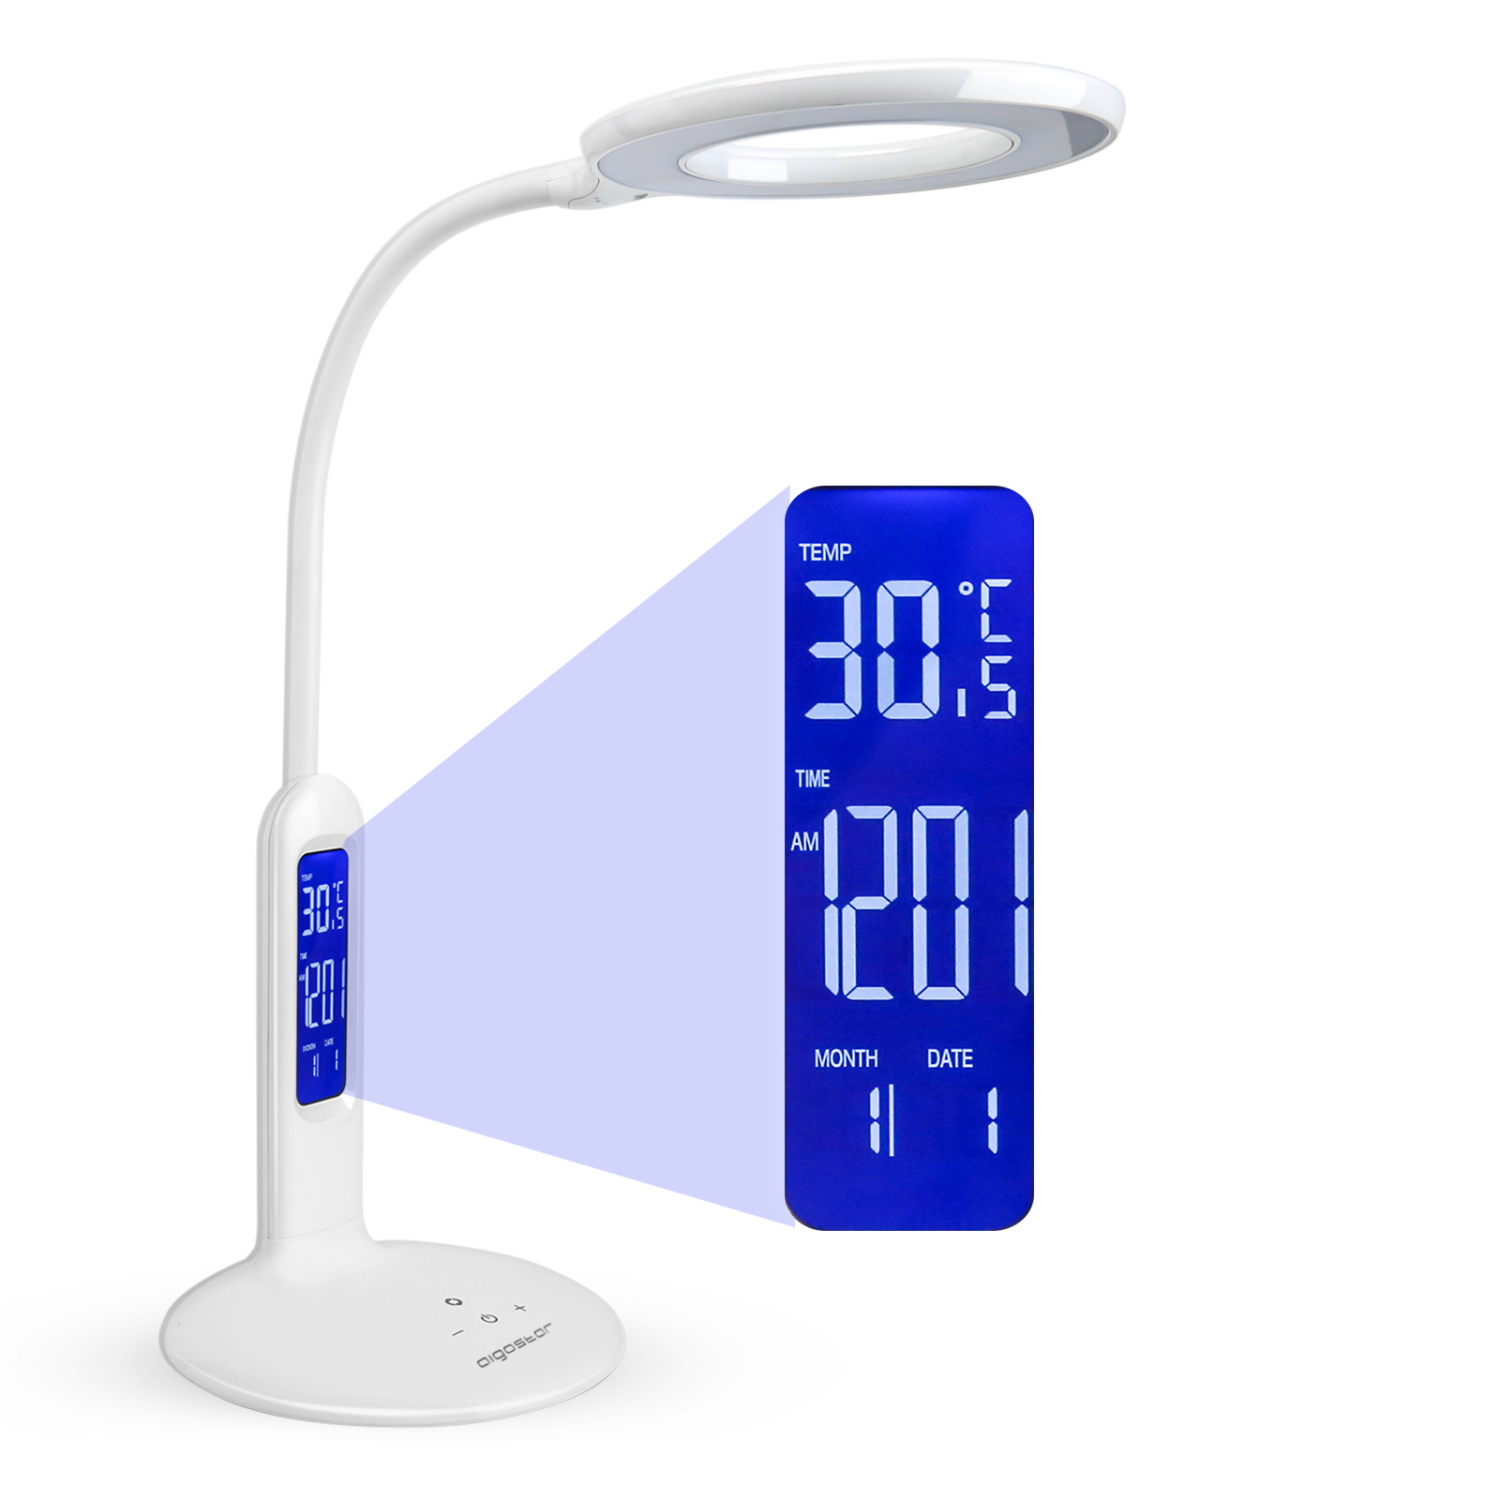 LED-bureaulamp, 7 W, touch-functie, 360 lm LCD-display met kalender, temperatuur, alarm 5 helderheidsniveaus, 2 verlichtingsmodi voor warm en wit licht.